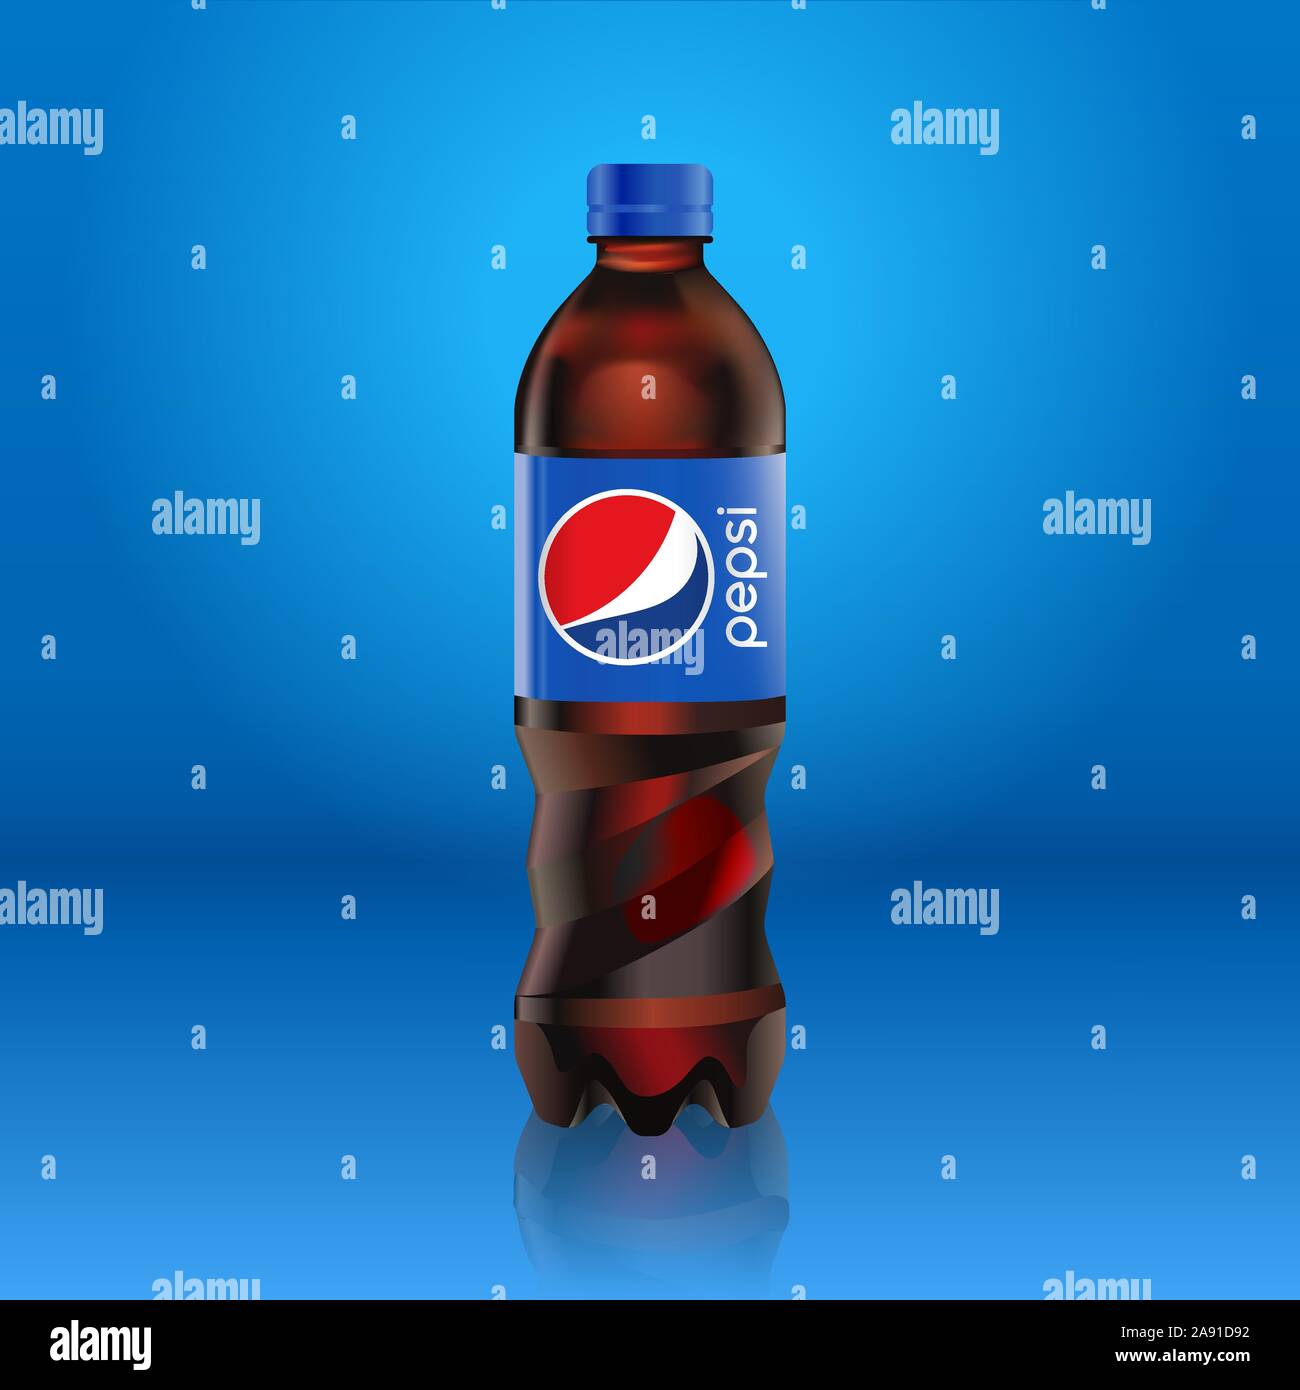 Realistico Pepsi Cola bottiglia mock up con etichetta blu con il logo isolato su sfondo blu riflessa dal pavimento, illustrazione vettoriale. Adatto per Illustrazione Vettoriale